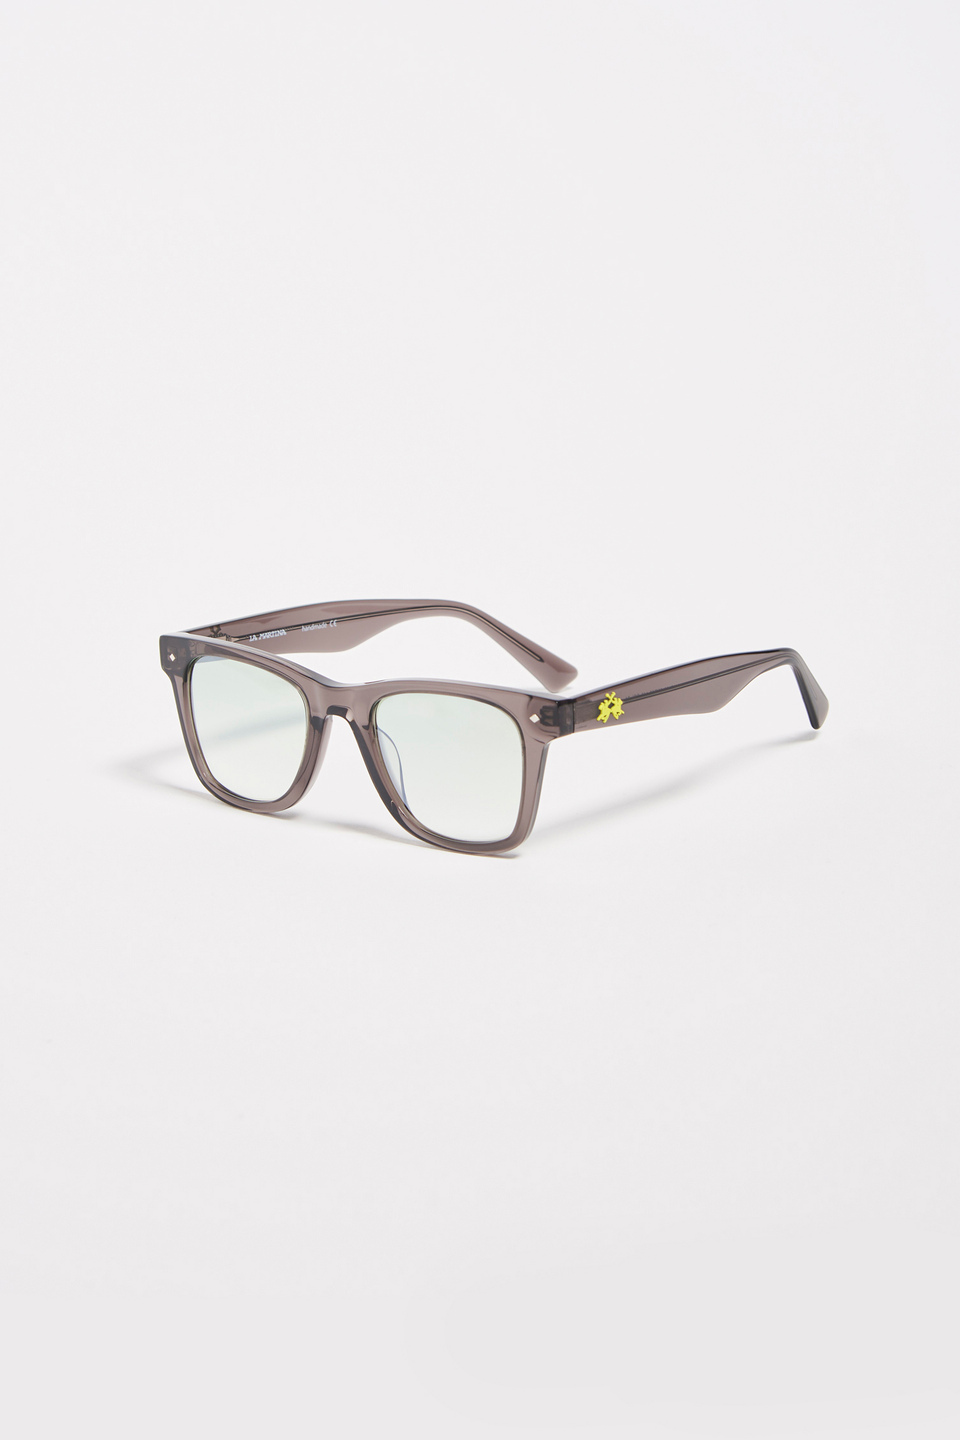 Square model men's sunglasses | La Martina - Official Online Shop